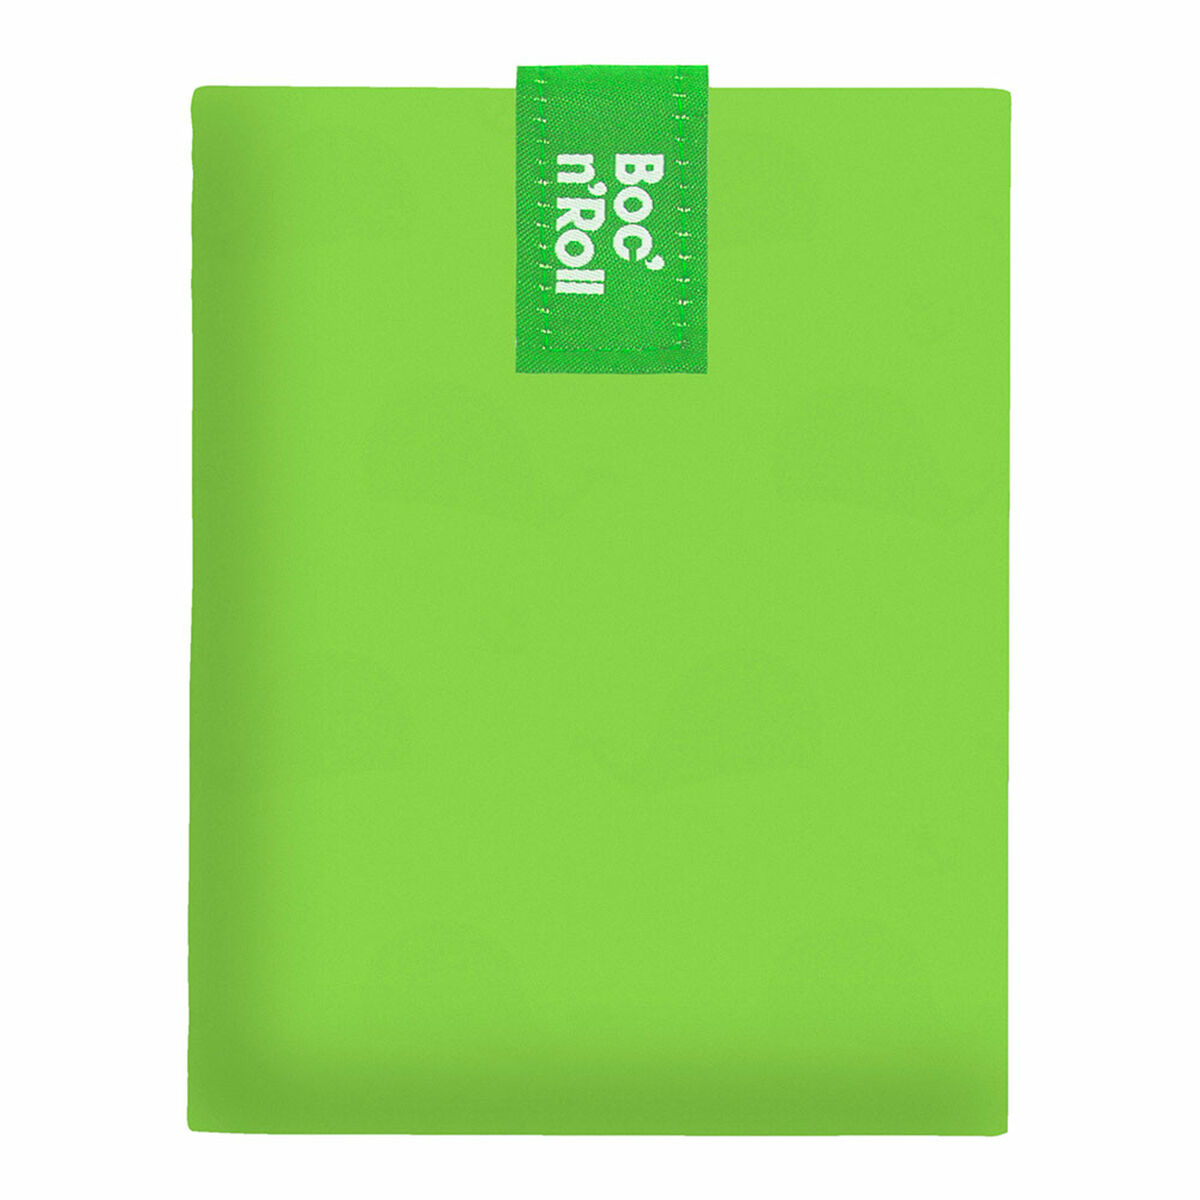 Osta tuote Eväslaatikko Roll’eat Boc’n’roll Essential Vihreä (11 x 15 cm) verkkokaupastamme Korhone: Gourmet & Keittiö 10% alennuksella koodilla KORHONE